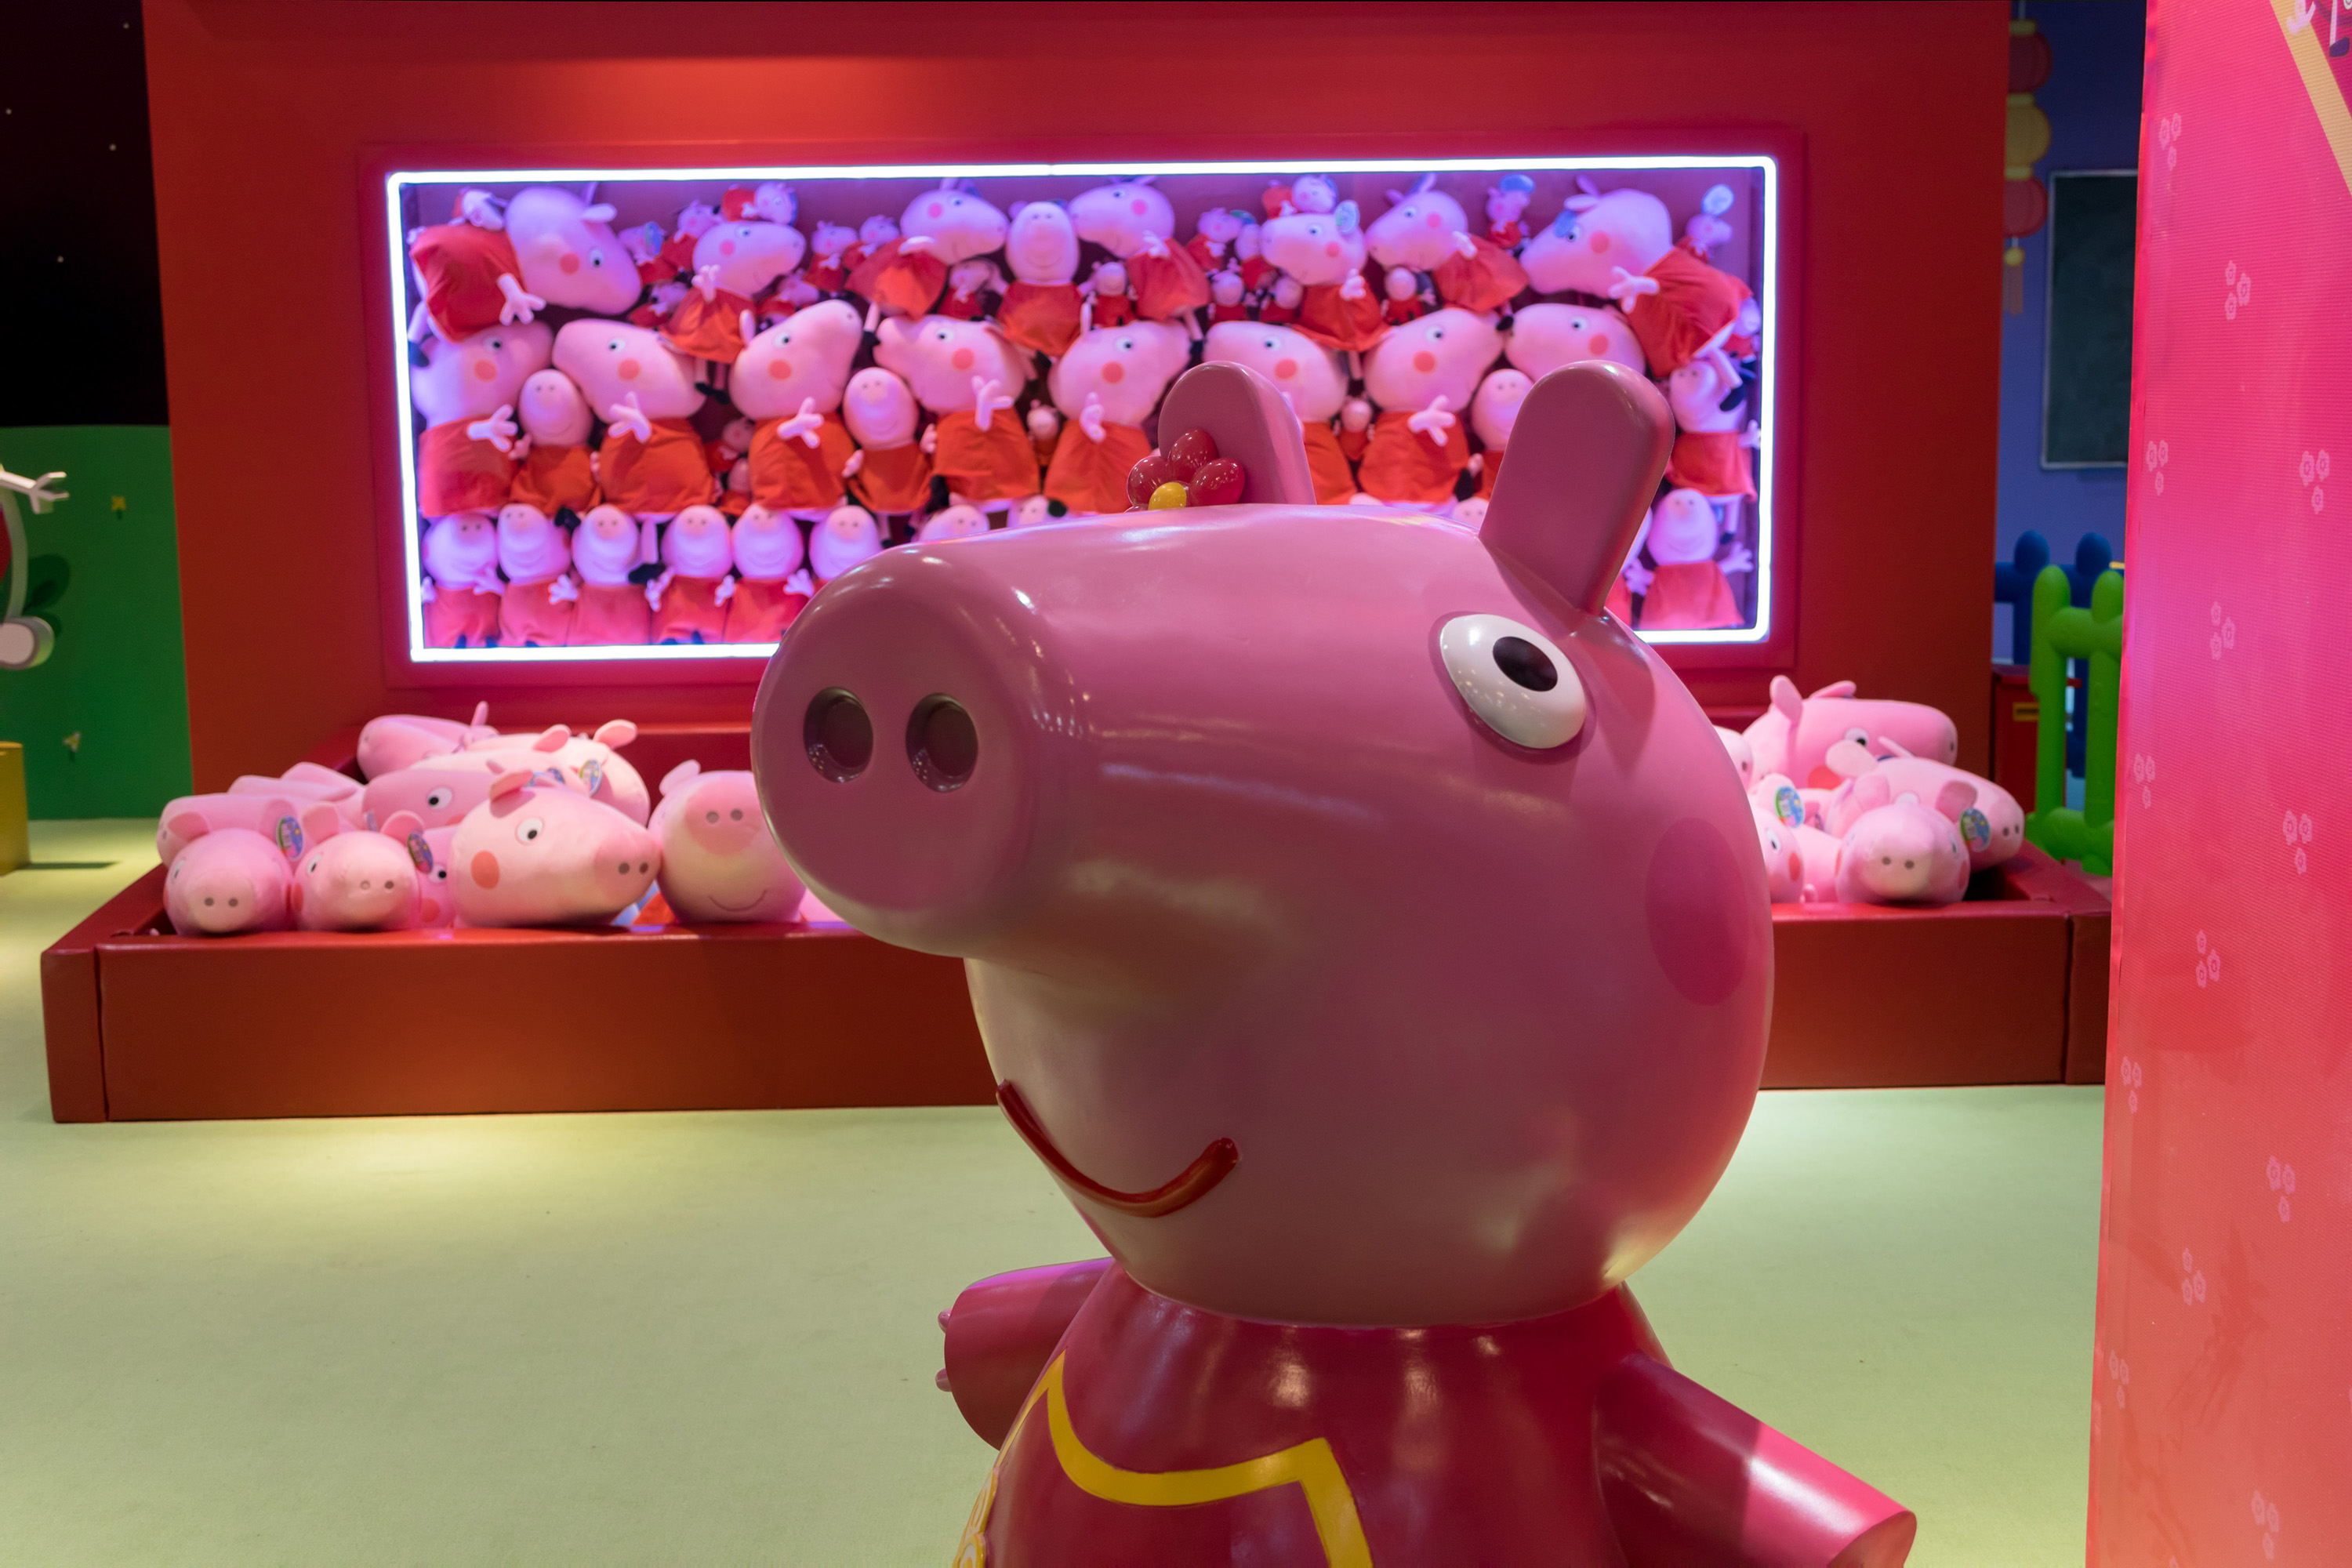 F5 - Cinema e Séries - Hasbro compra estúdio produtor de 'Peppa Pig' por  US$ 4 bilhões - 23/08/2019